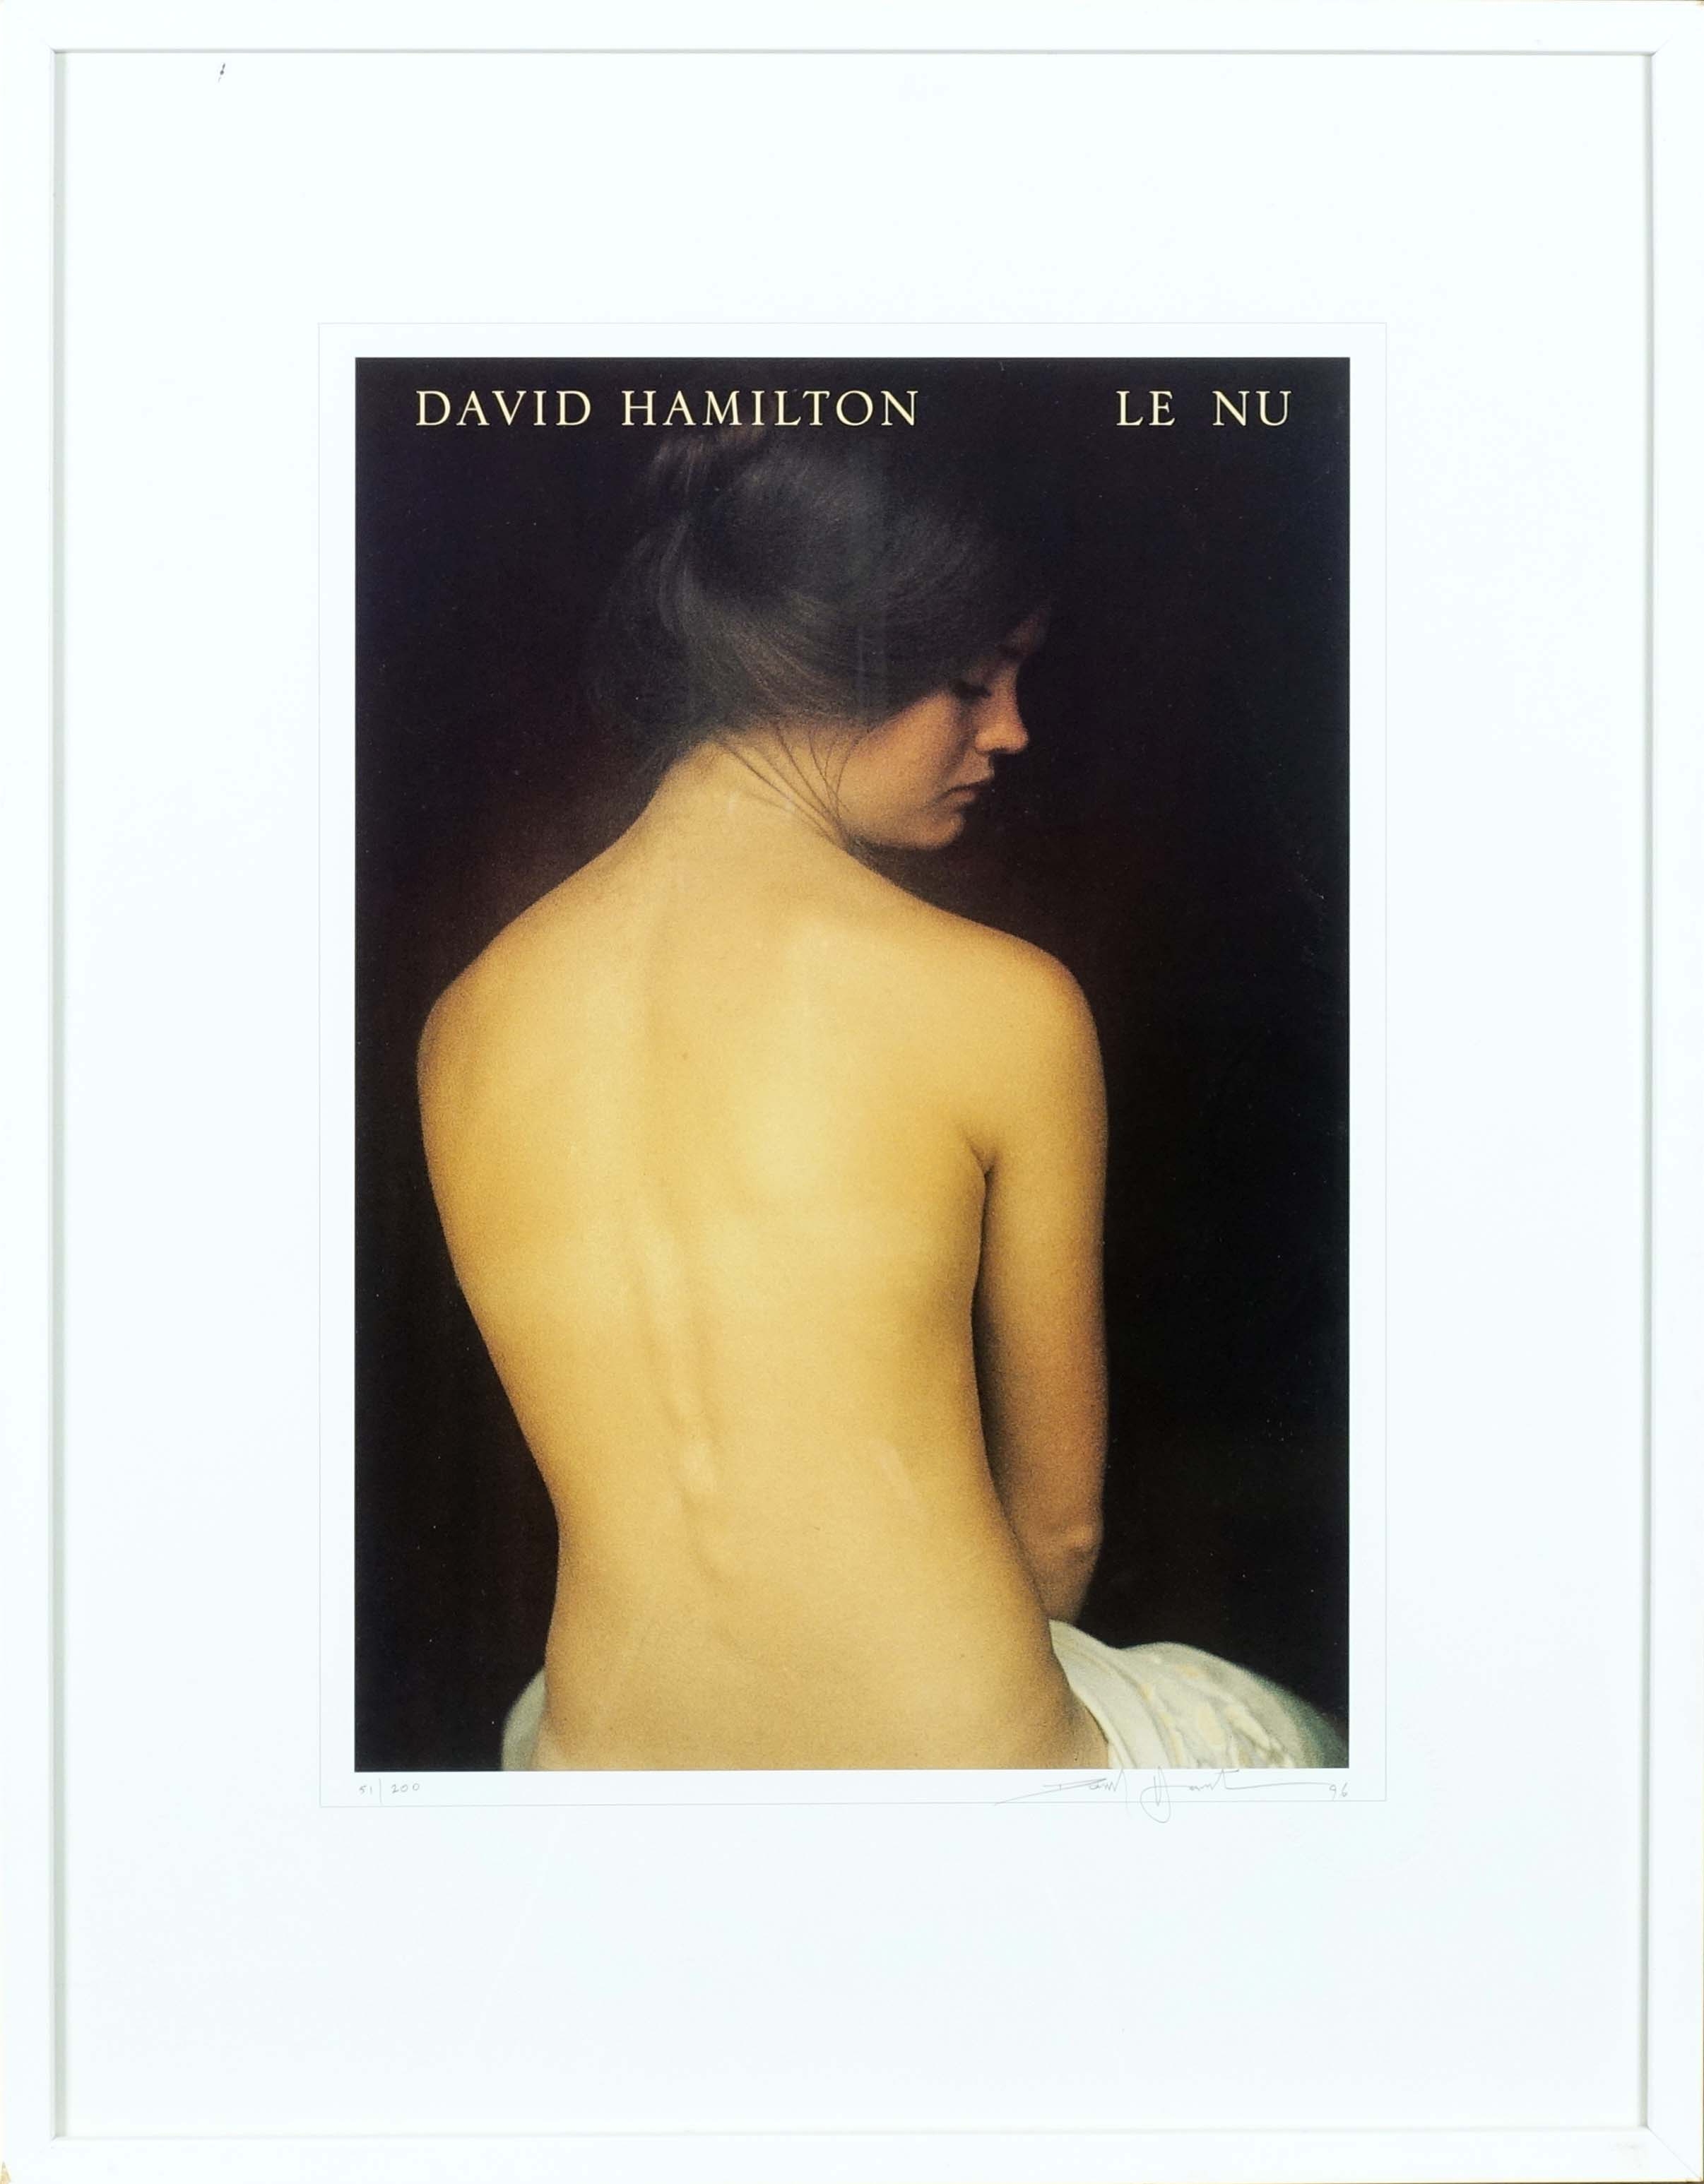 Le nu by David Hamilton